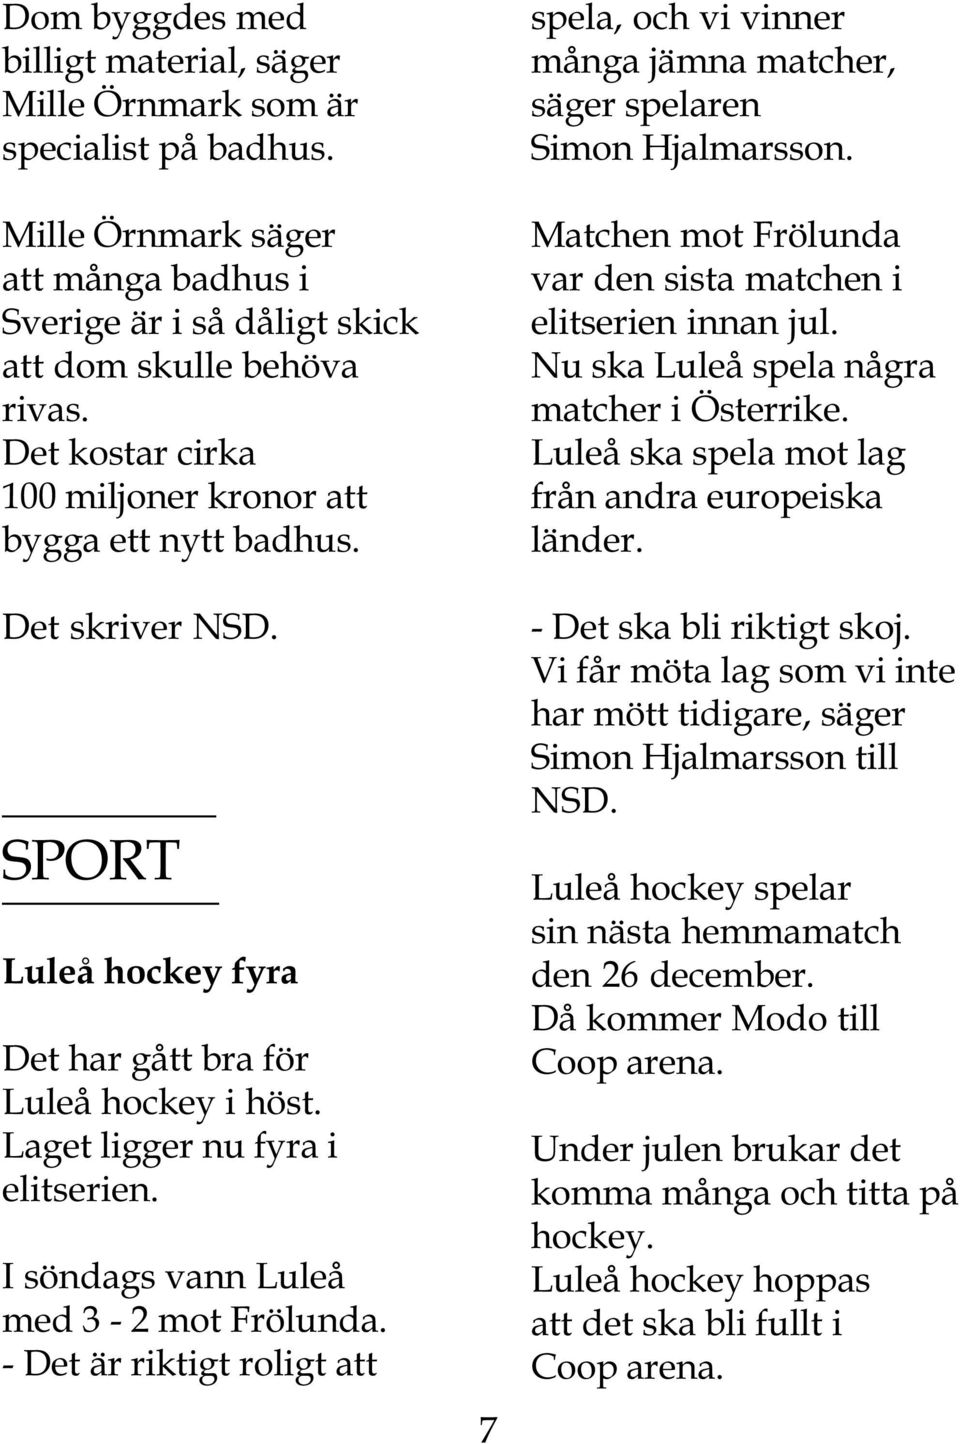 I söndags vann Luleå med 3-2 mot Frölunda. - Det är riktigt roligt att 7 spela, och vi vinner många jämna matcher, säger spelaren Simon Hjalmarsson.